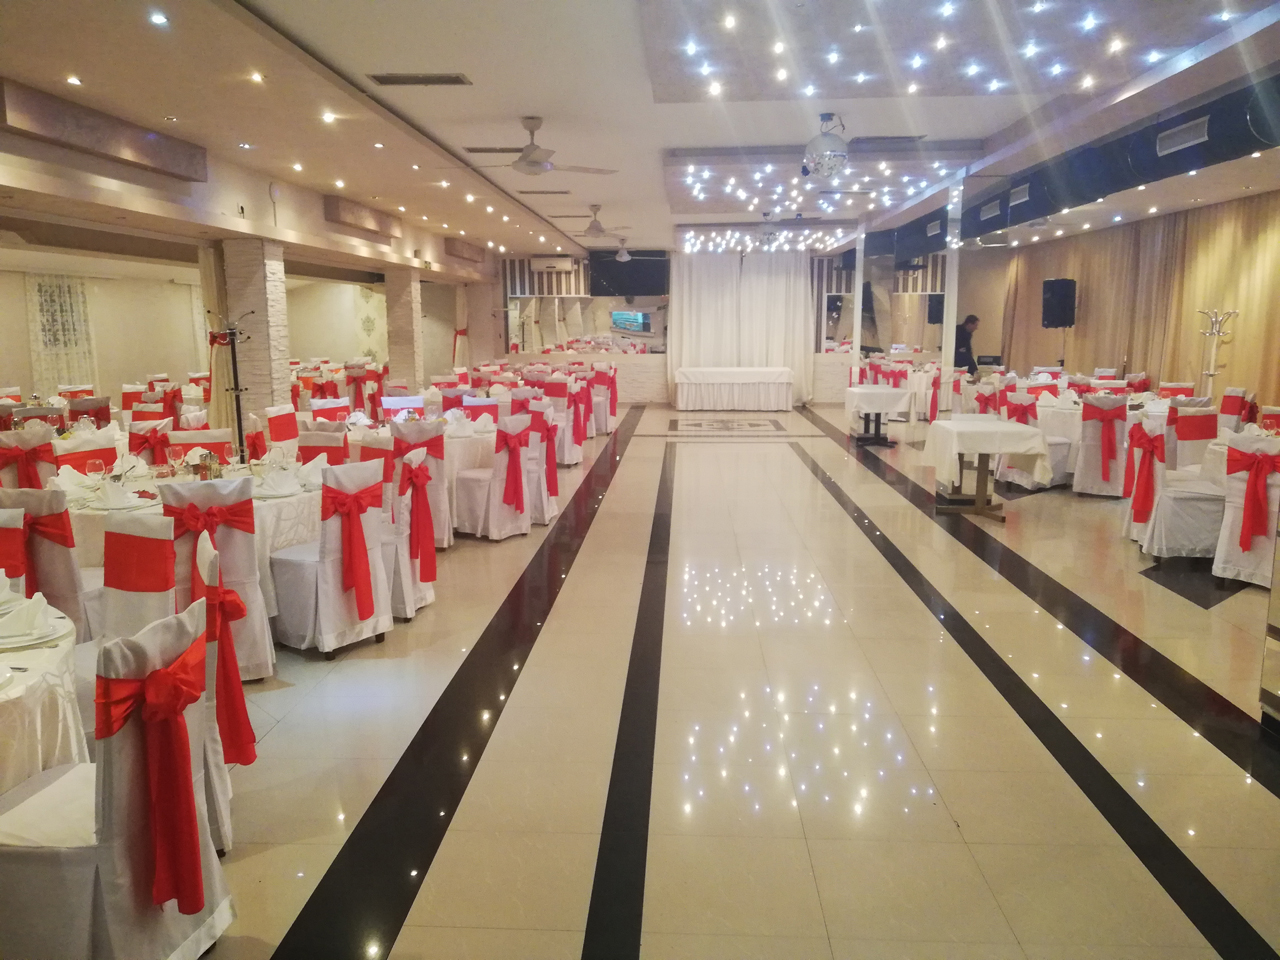 ALEXANDER RESTAURANT FOR CELEBRATION Restaurants for weddings, celebrations Beograd